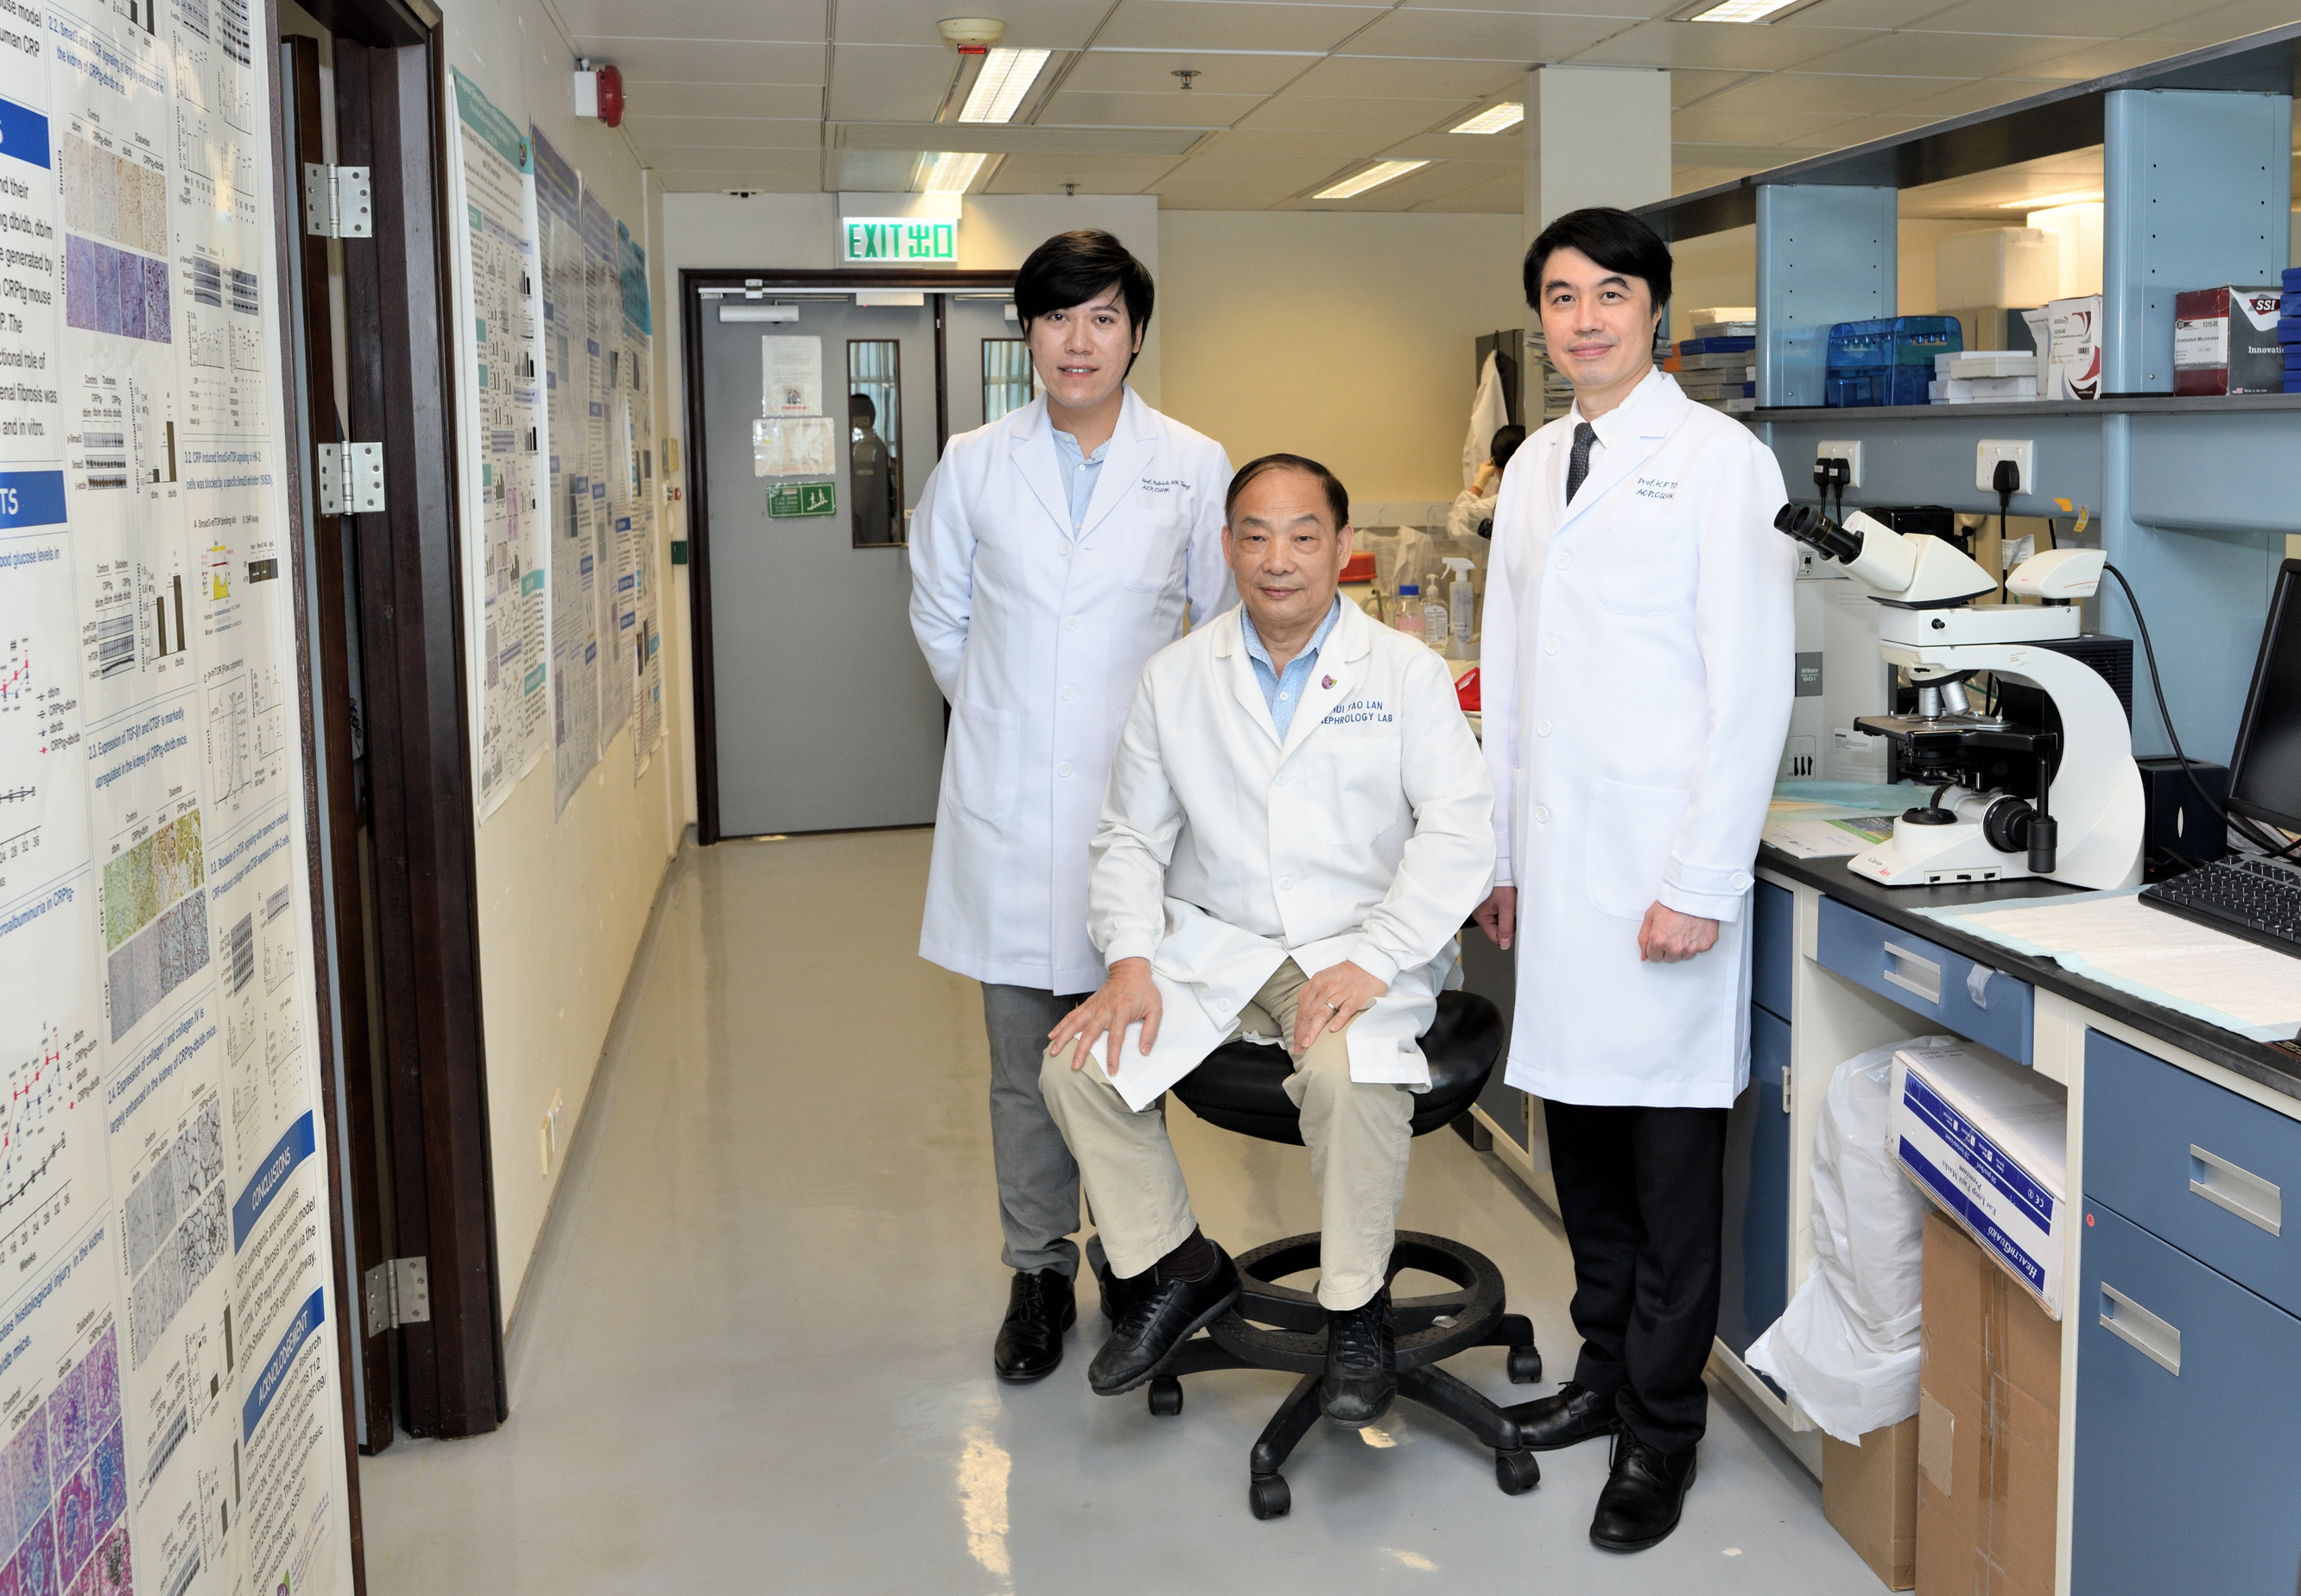 Dr. Patrick Tang, Prof. Lan and Prof. To